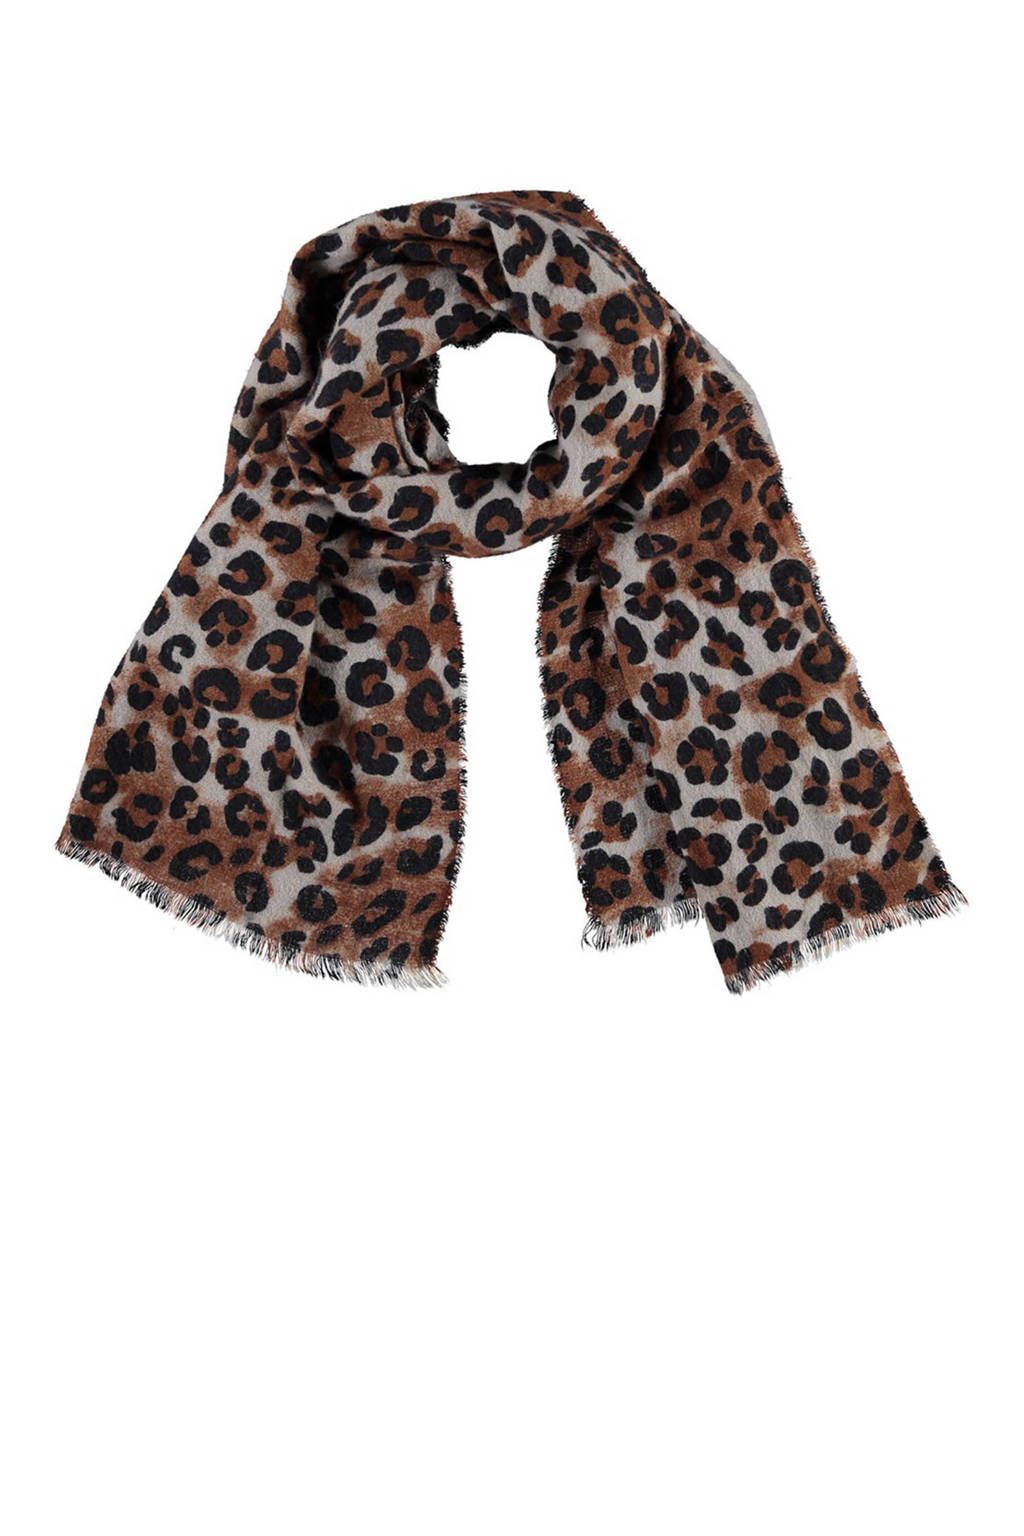 Sarlini sjaal met dierenprint bruin, bruin/grijs/zwart